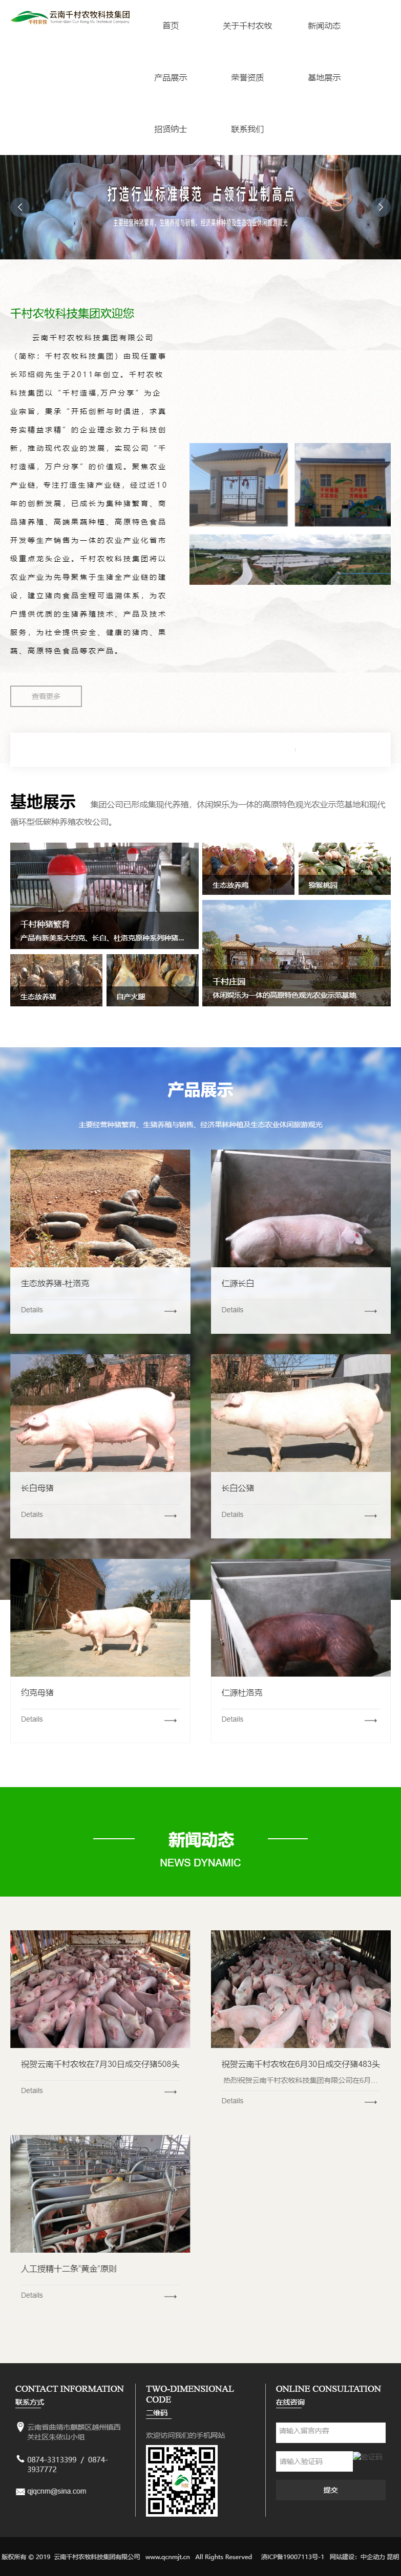 云南千村农牧科技集团有限公司网站案例